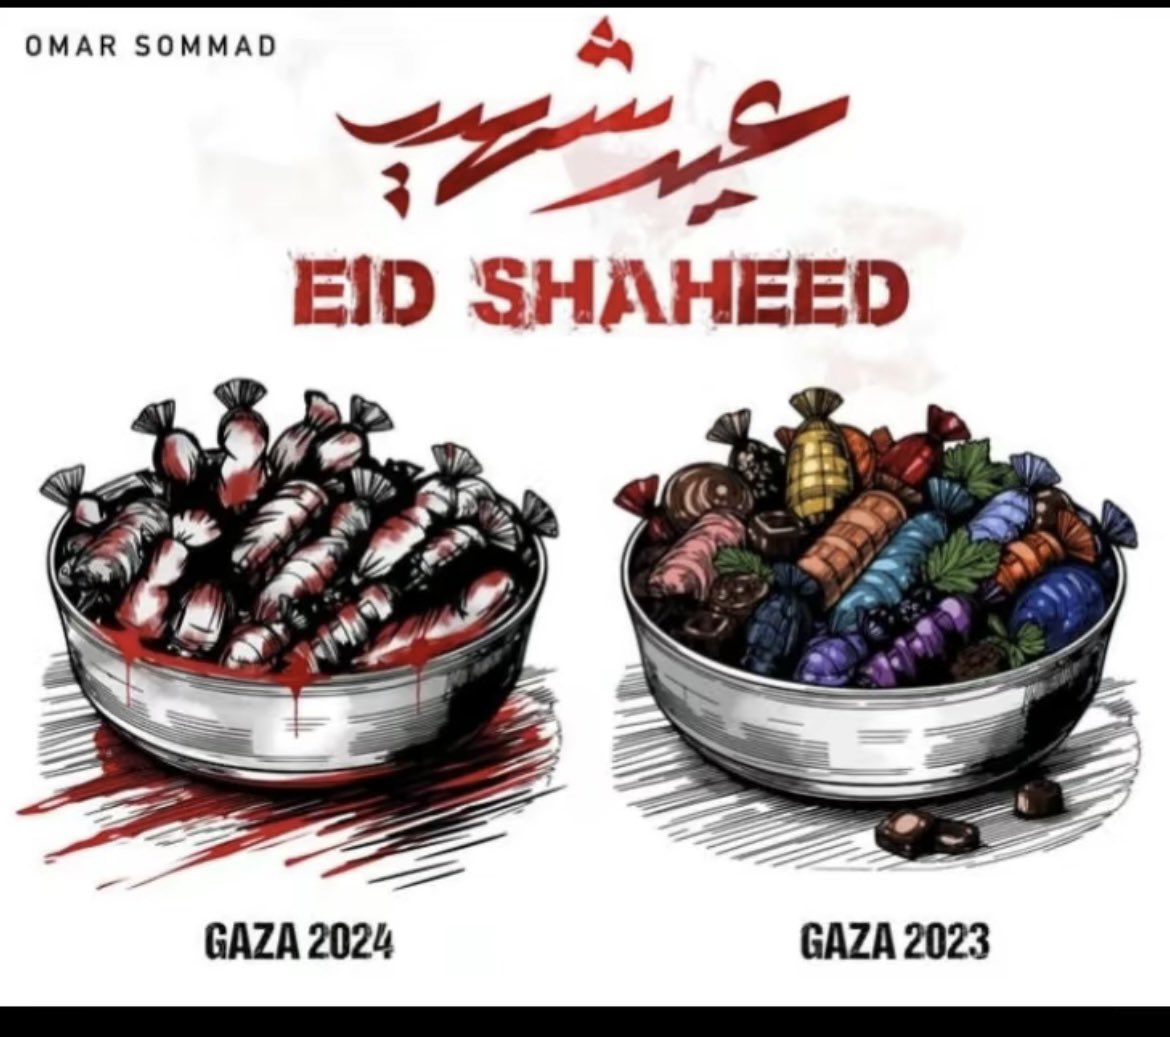 Eid 2023 vs Eid 2024 in Gaza.!🇵🇸💔
#هلال_شوال